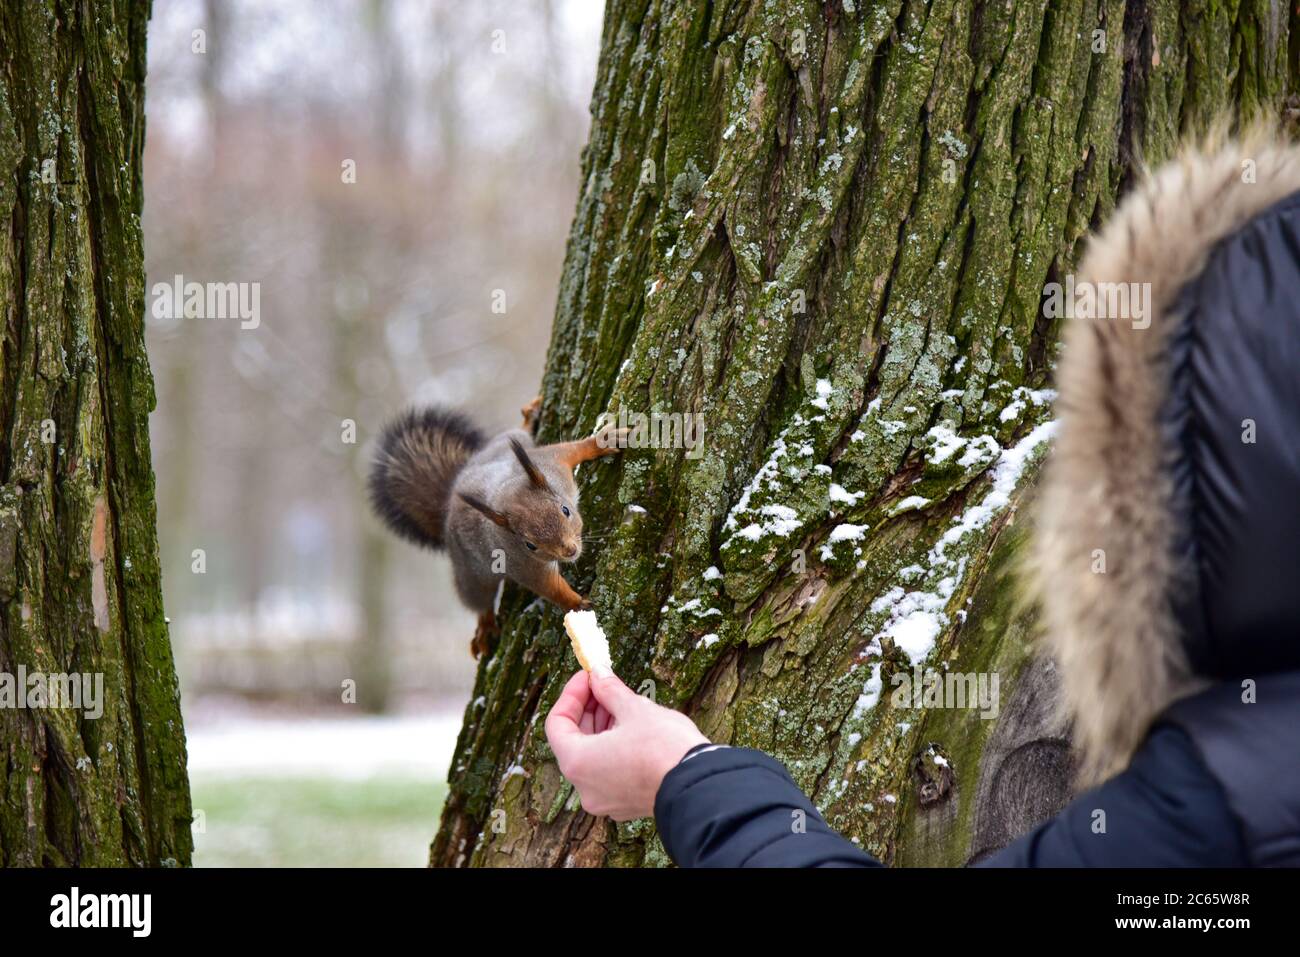 En hiver, une femme nourrit un écureuil sur un arbre. Banque D'Images